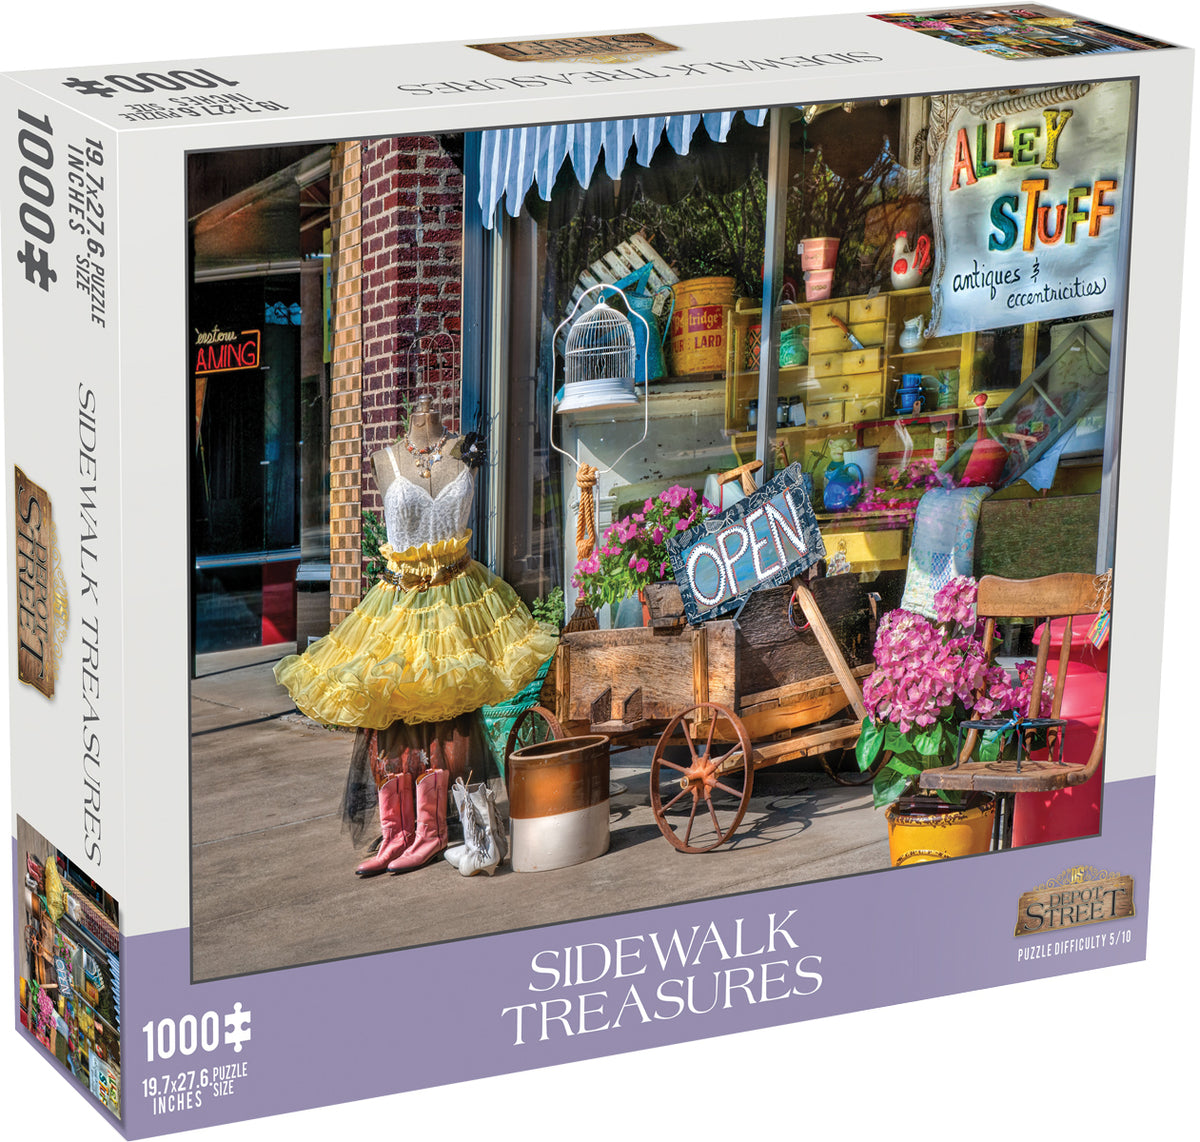 Sidewalk Treasures 1,000-Piece Puzzle